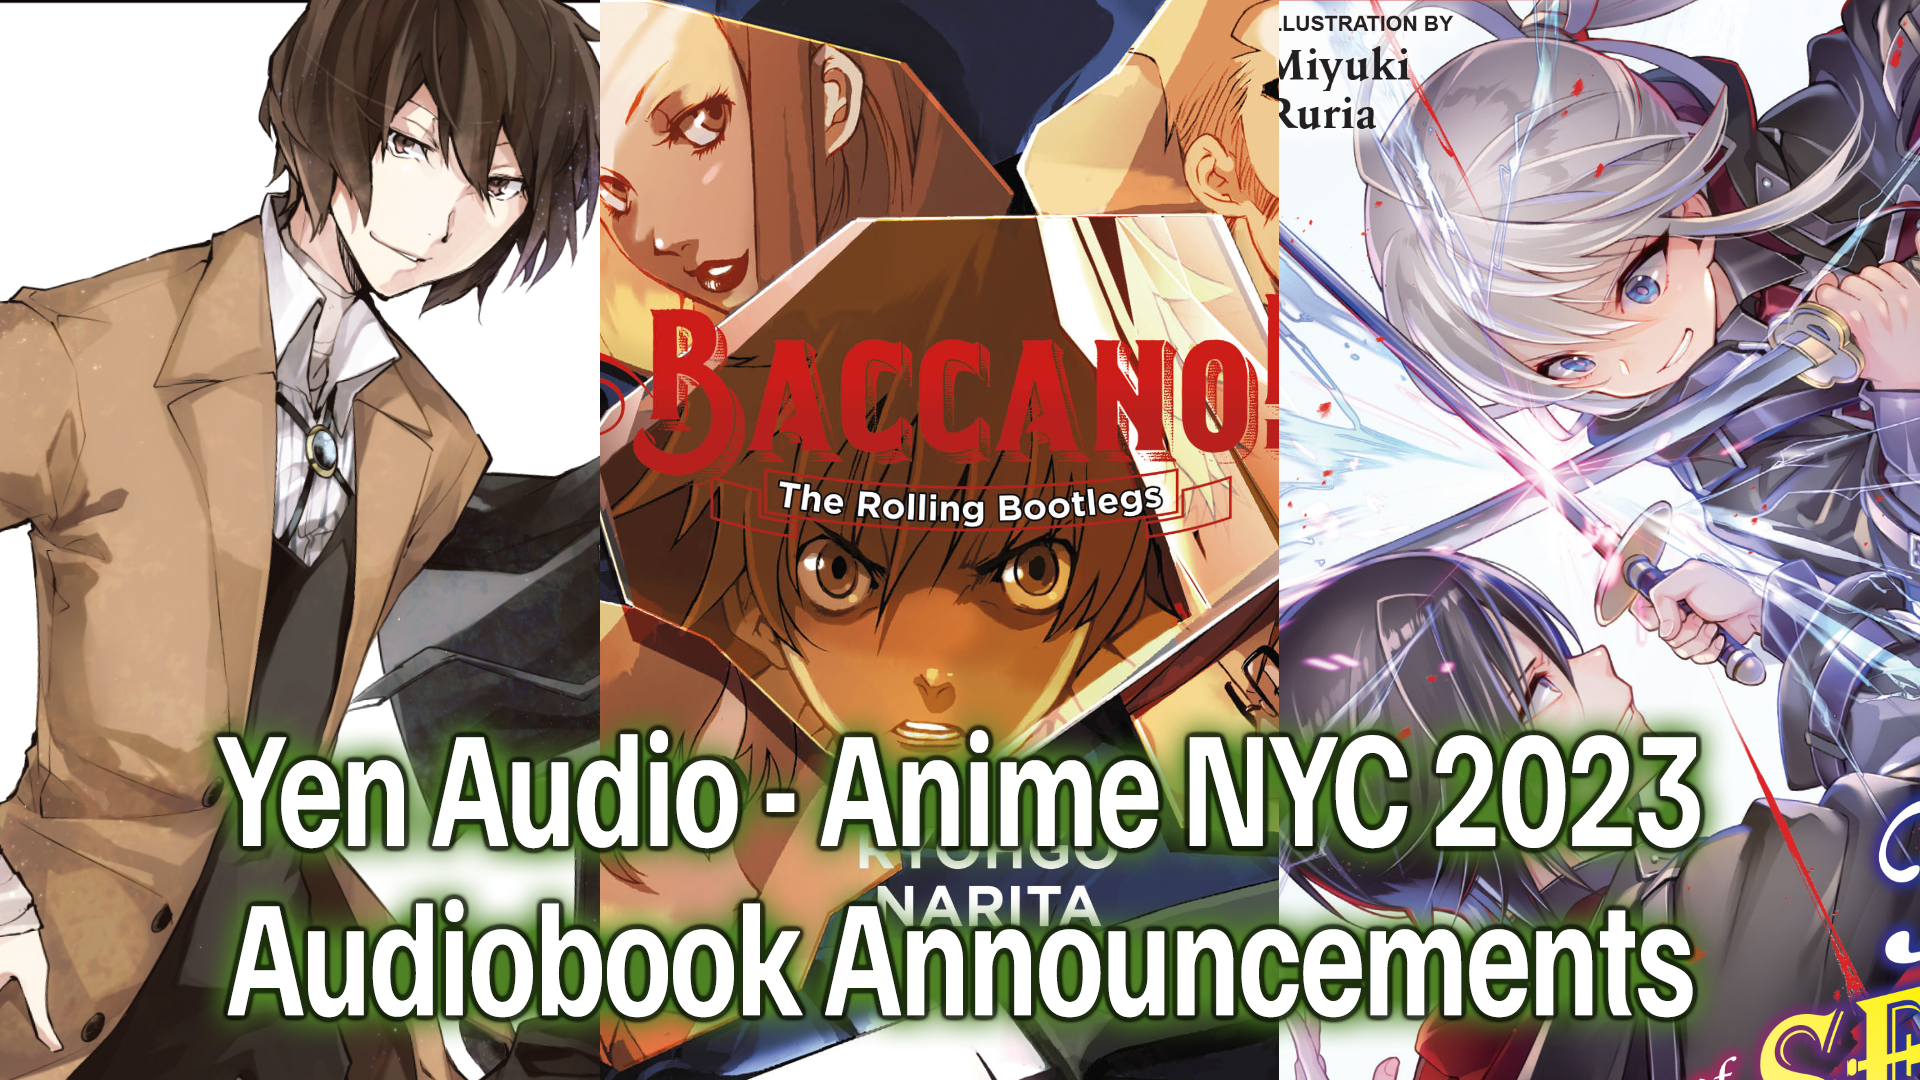 Yen Audio Announces Three New Audiobooks at Anime NYC 2023